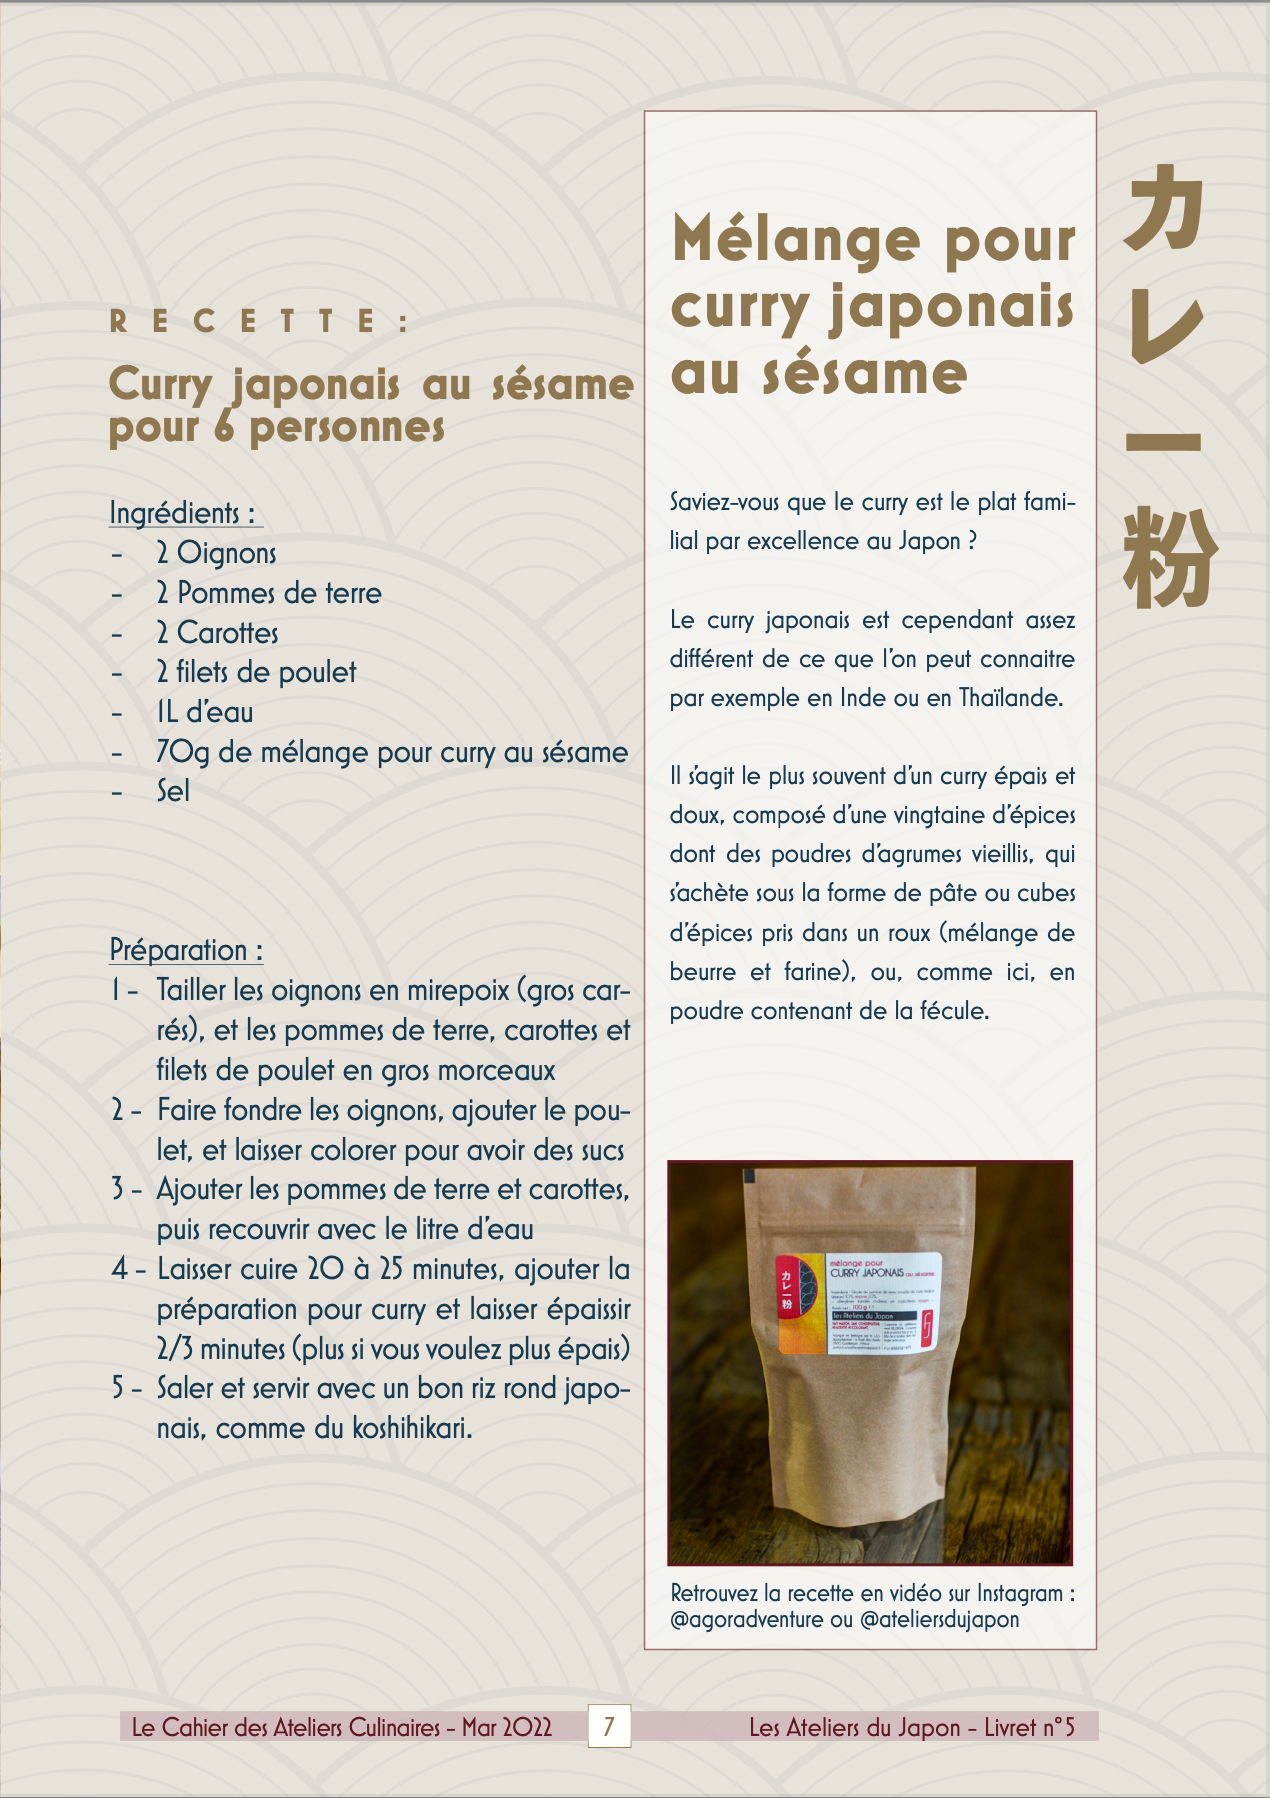 Curry japonais au sésame pour 6 personnes - Les Ateliers du Japon